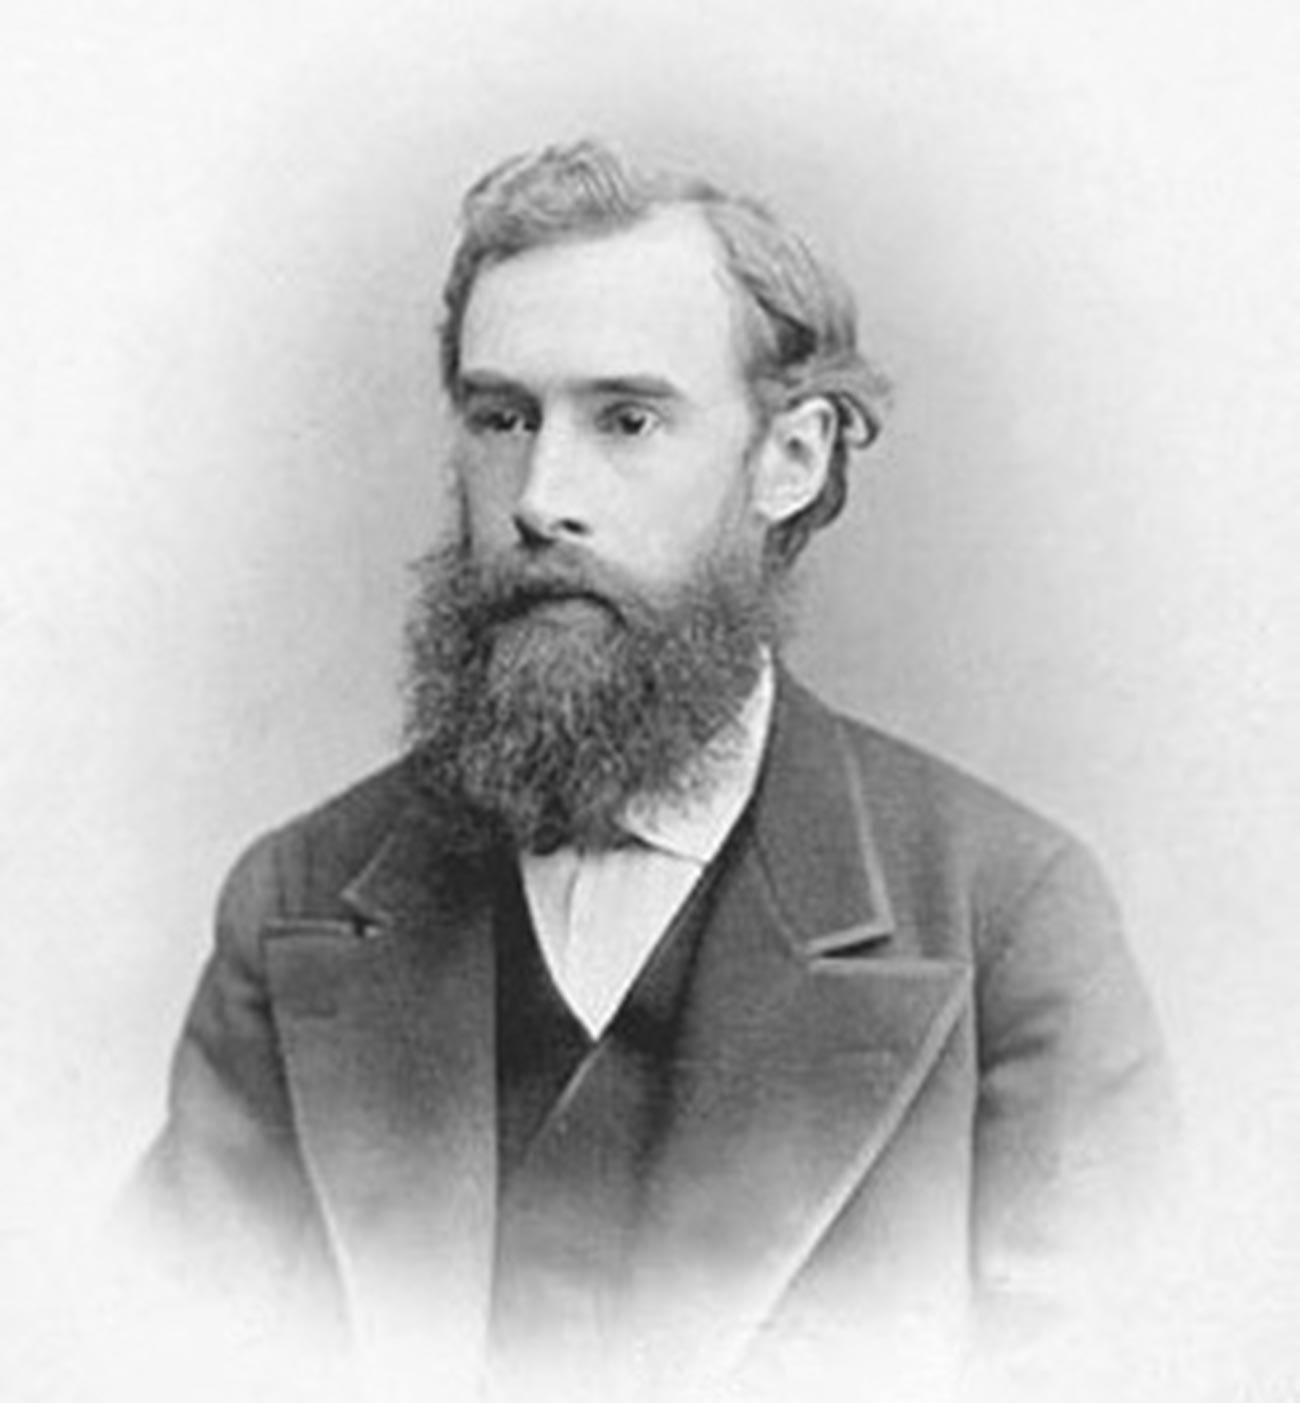 Pavel Tretyakov in 1892